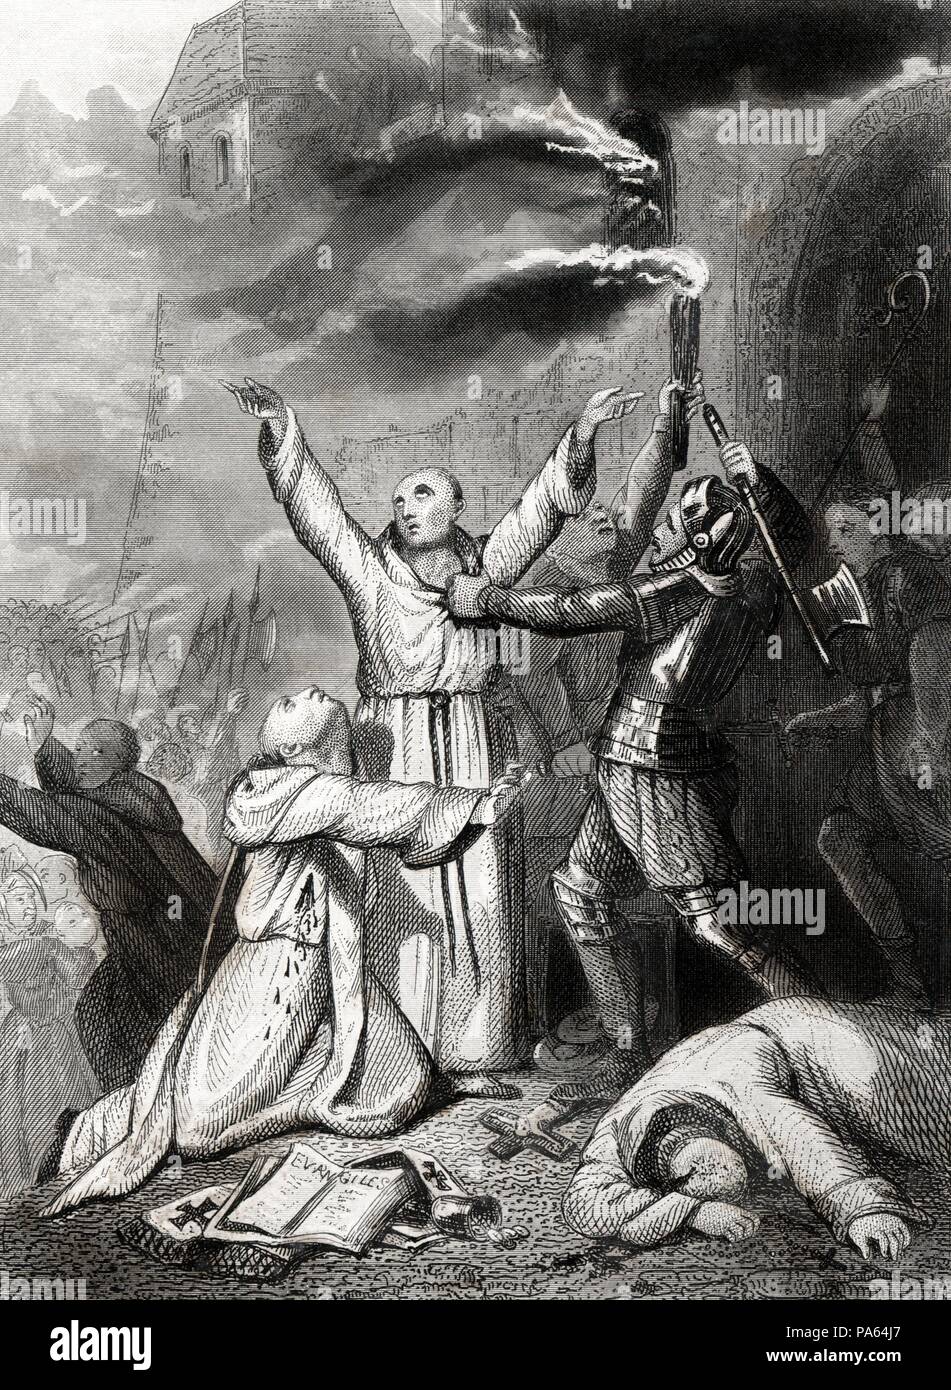 Gran Bretaña. Matanza de sacerdotes católicos en Dublín en 1647. Grabado de 1864. Stock Photo